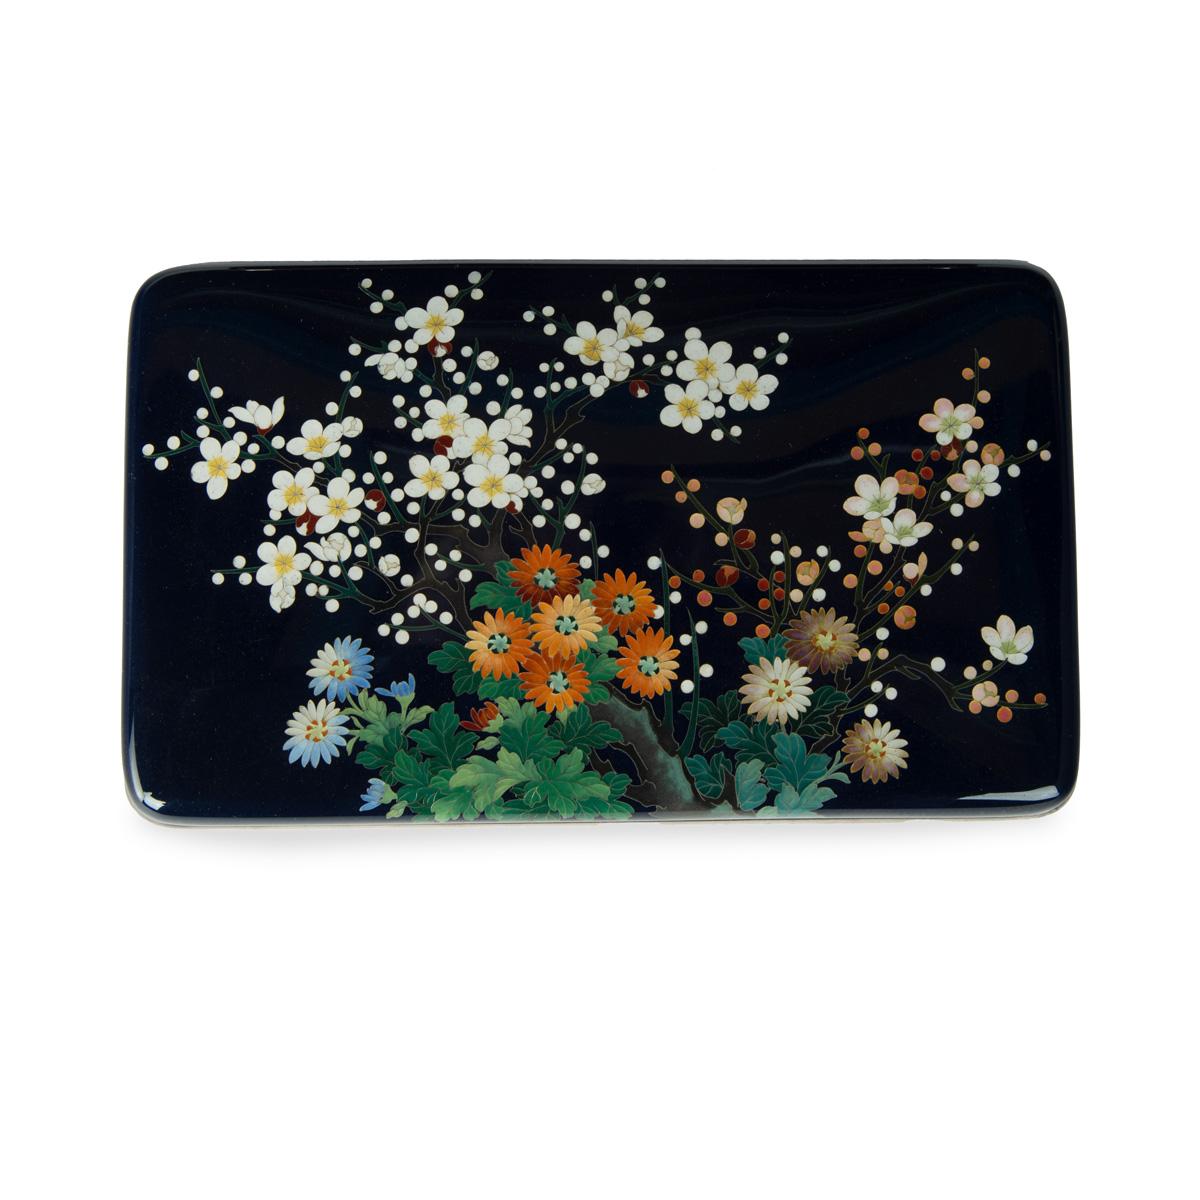 Boîte et couvercle cloisonnés de la période Meiji, de la société Ando, travaillés avec du fil d'argent et des émaux colorés, avec un éventail de fleurs aux couleurs vives, réservées sur un riche fond bleu nuit, avec des rebords en argent et une